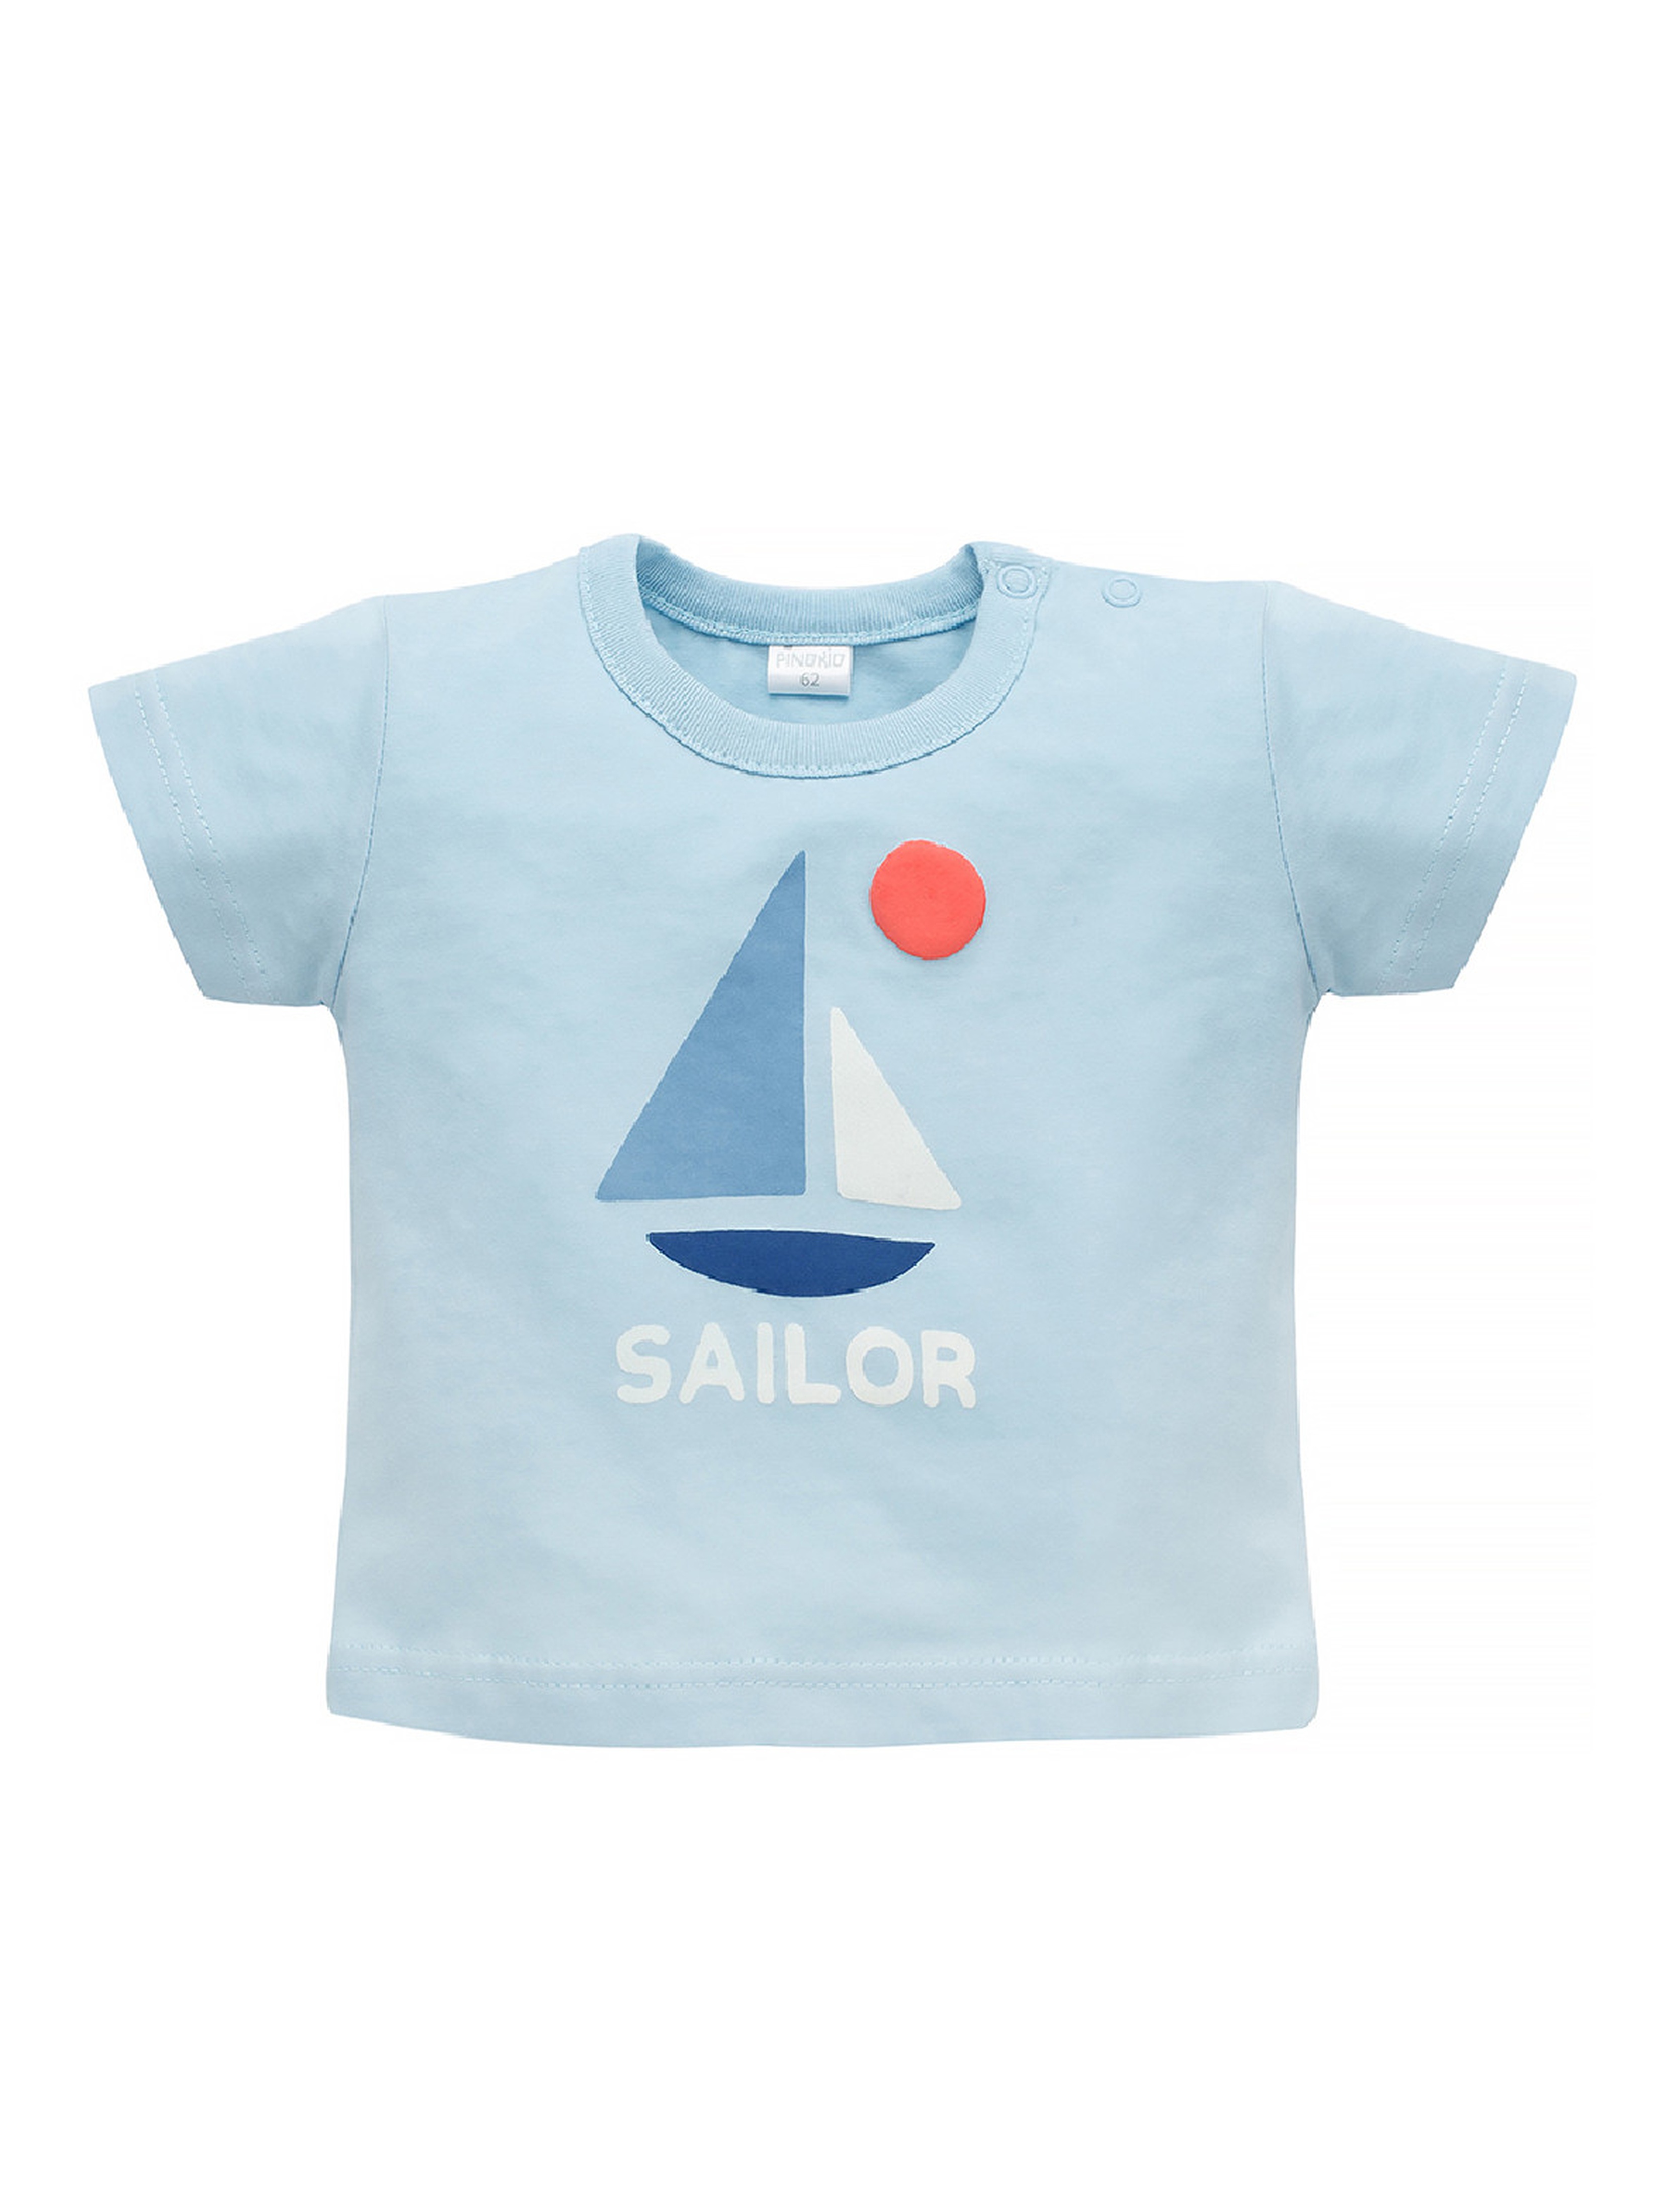 Bawełniany t-shirt dla chłopca Sailor niebieski